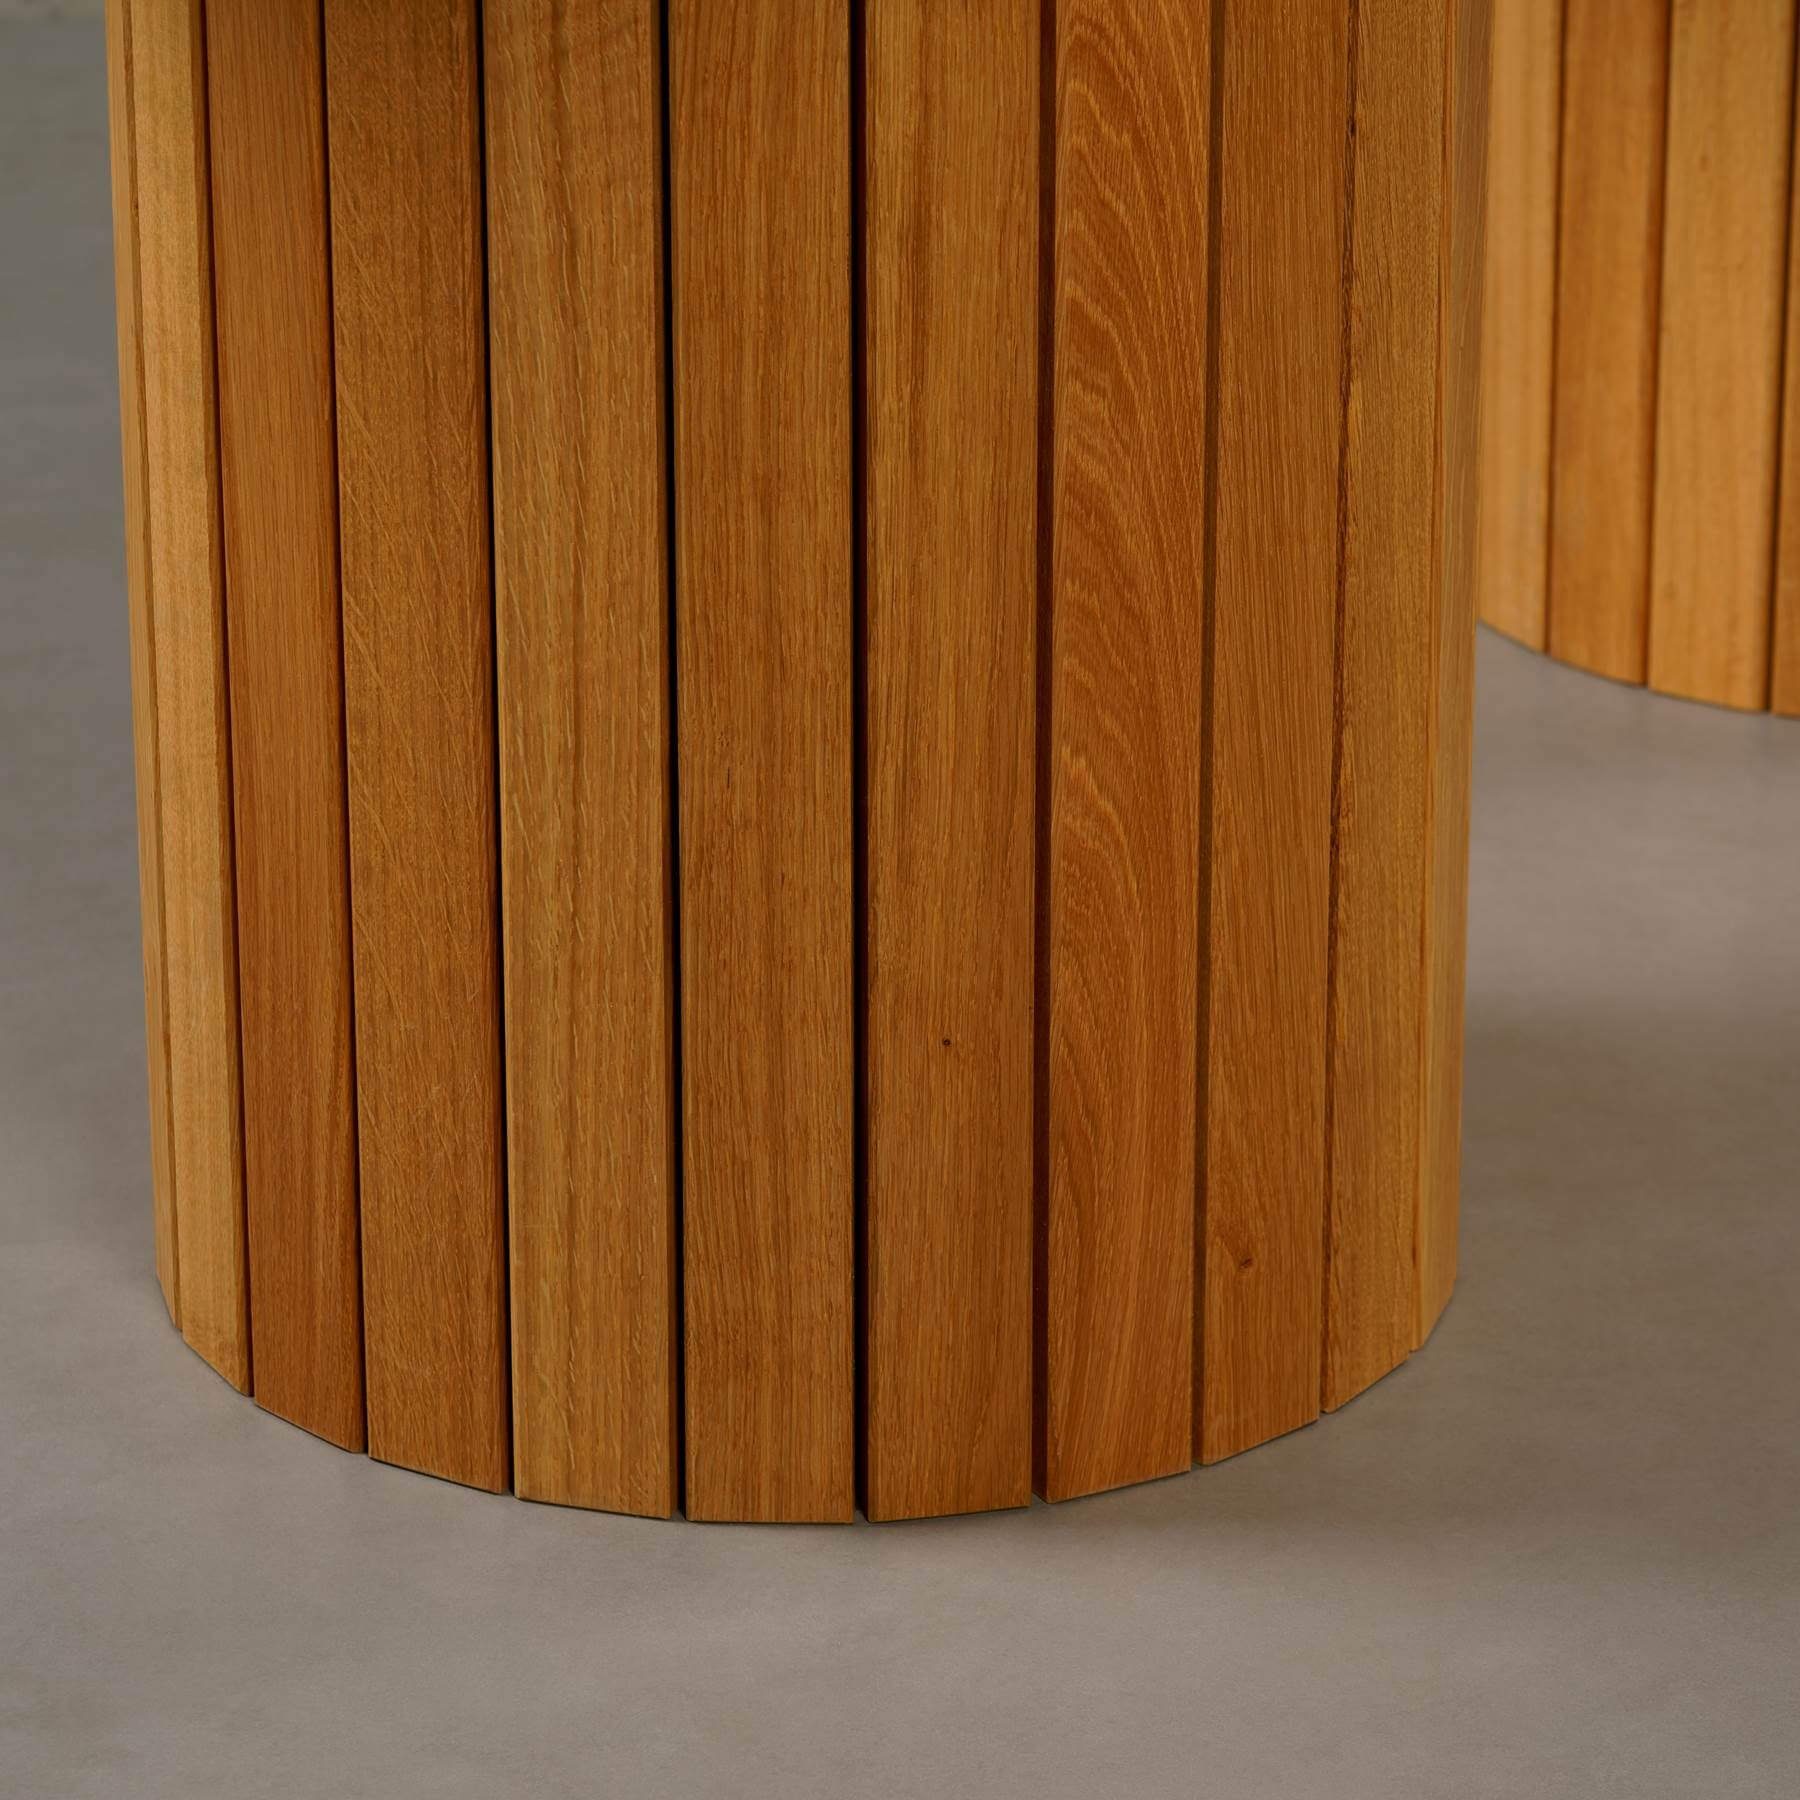 200x100x76cm ECHTEM Eichenholz Atelier Tisch Gestell, Esstisch MAGNA mit rund, Montana Esstisch Nero Marquina MARMOR,